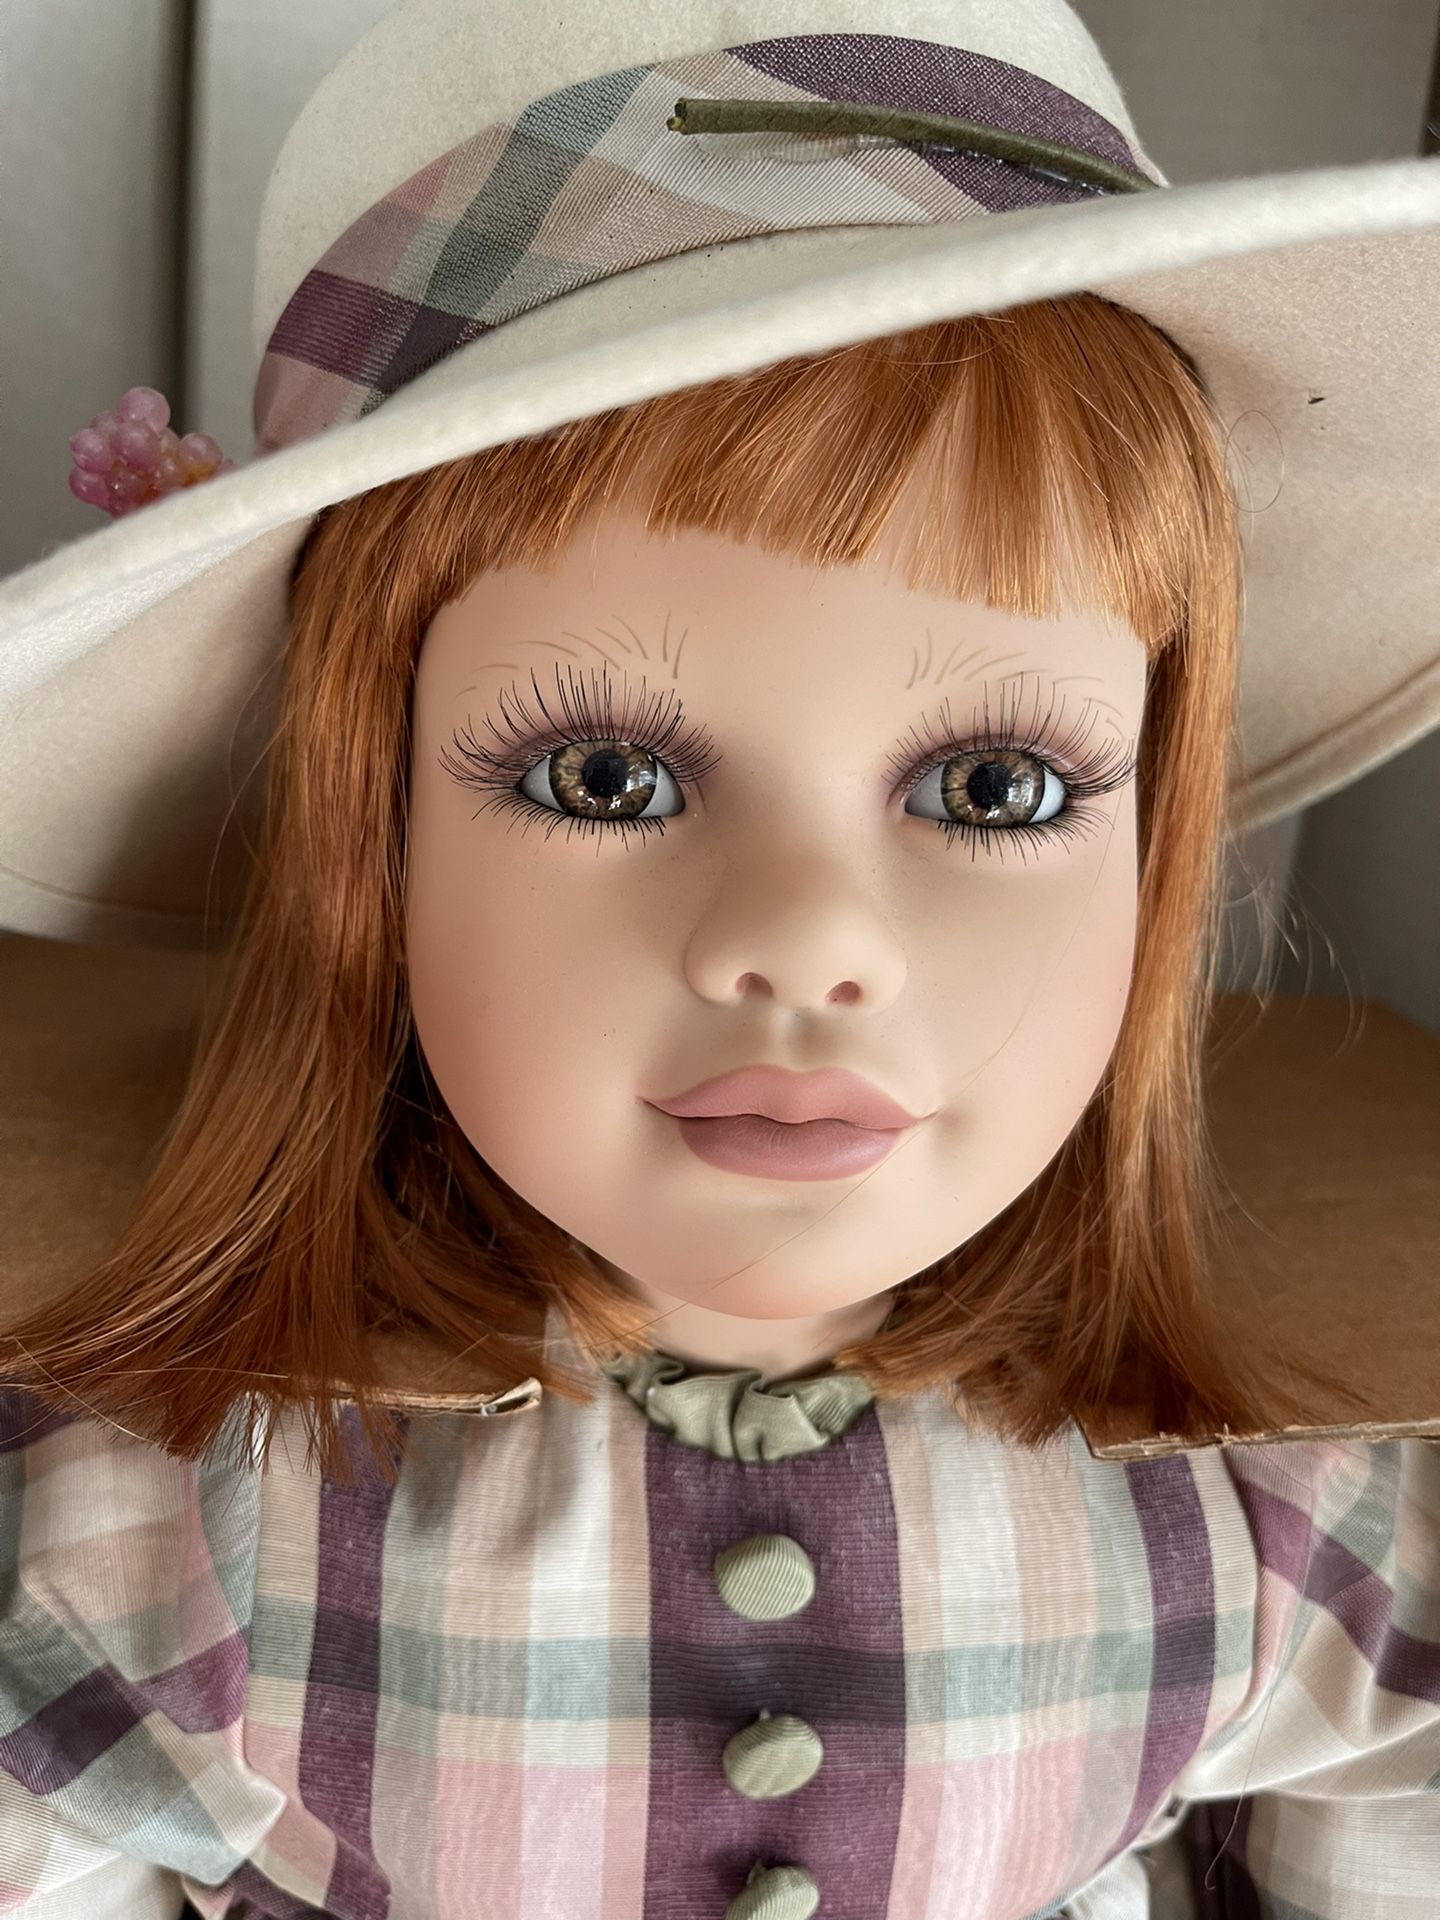  Virginia Ehrlich Turner Doll "Sage" Artists Collectibles